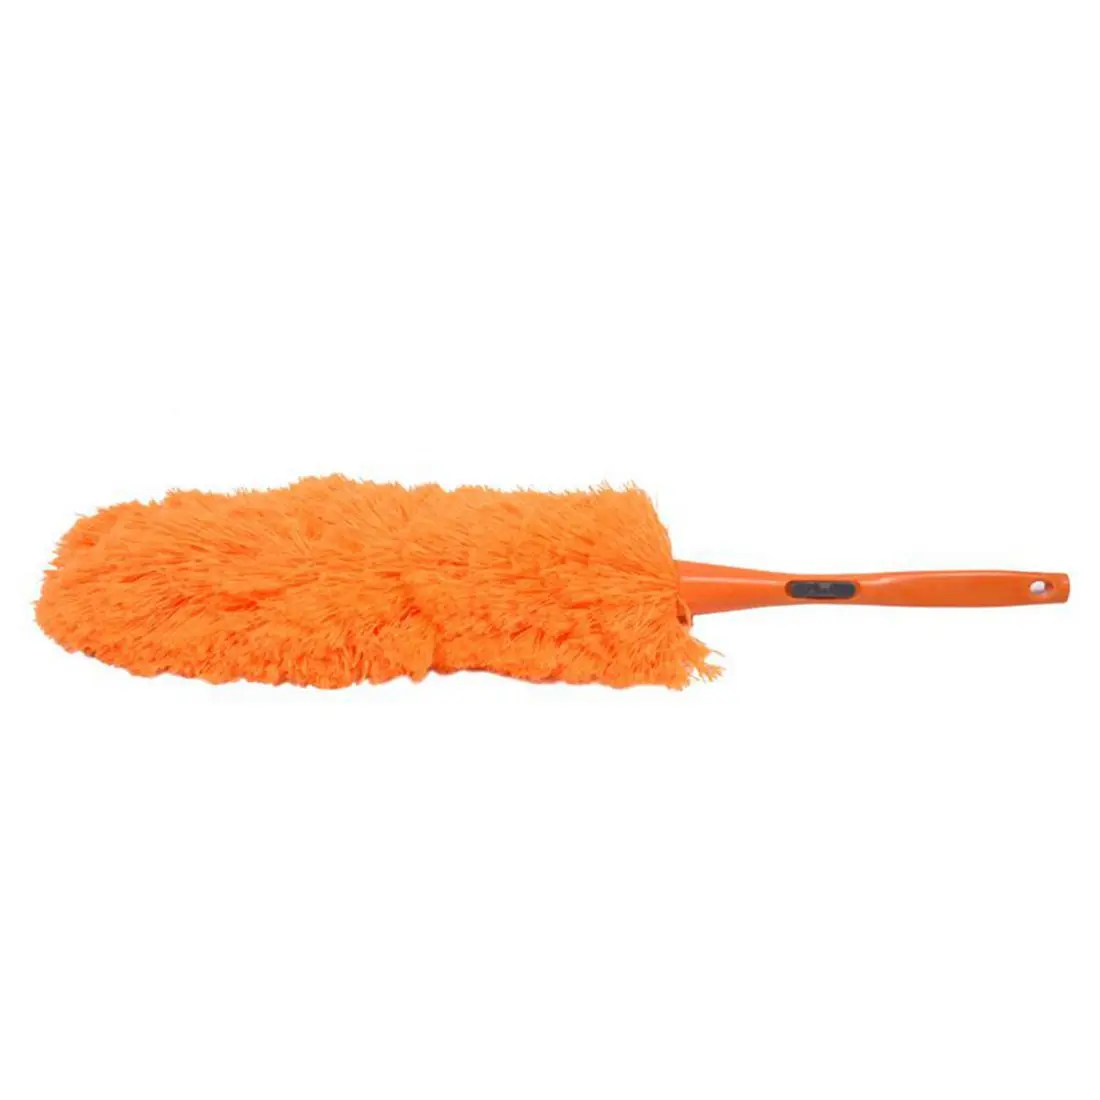 Промо-акция! Пылеуловитель против пыли очиститель волшебный мягкий Minifiber перо инструмент Minifiber, пластик - Цвет: Orange